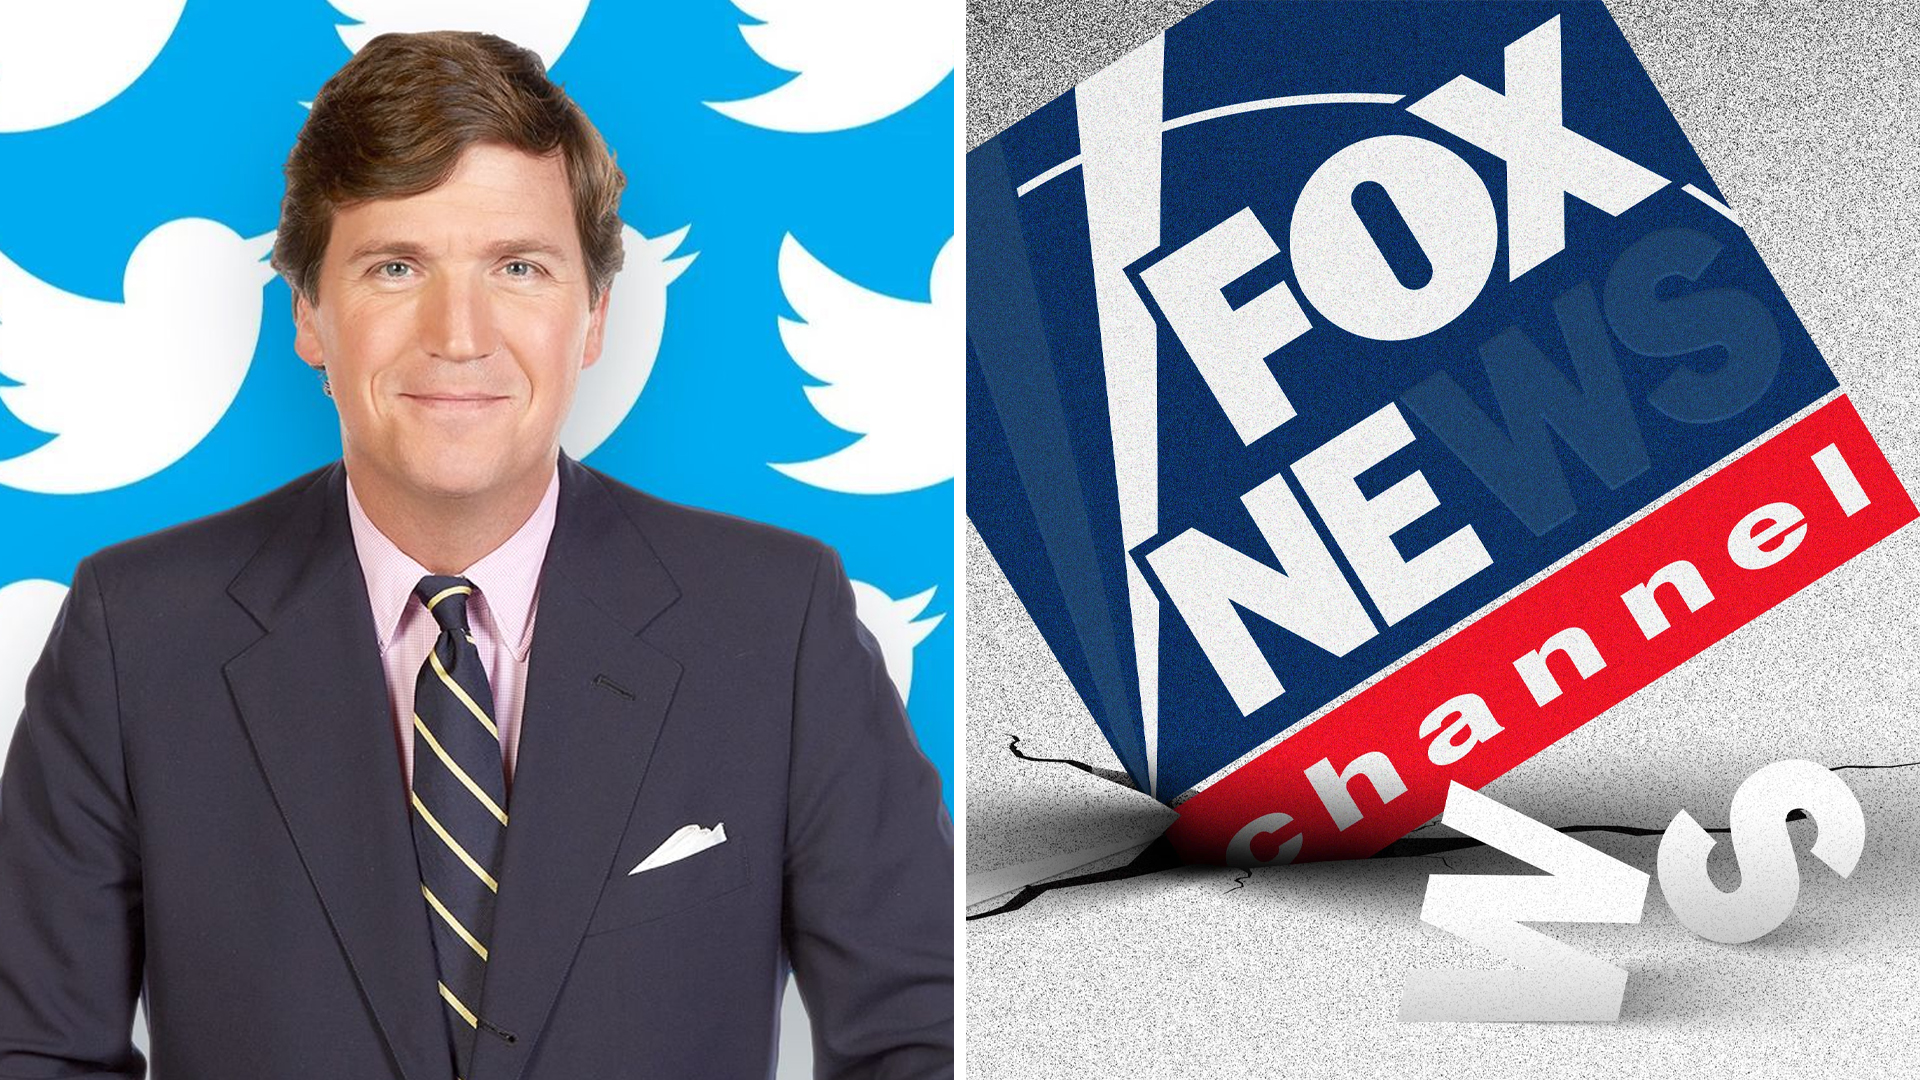 Tucker Carlson Fox News Anchors